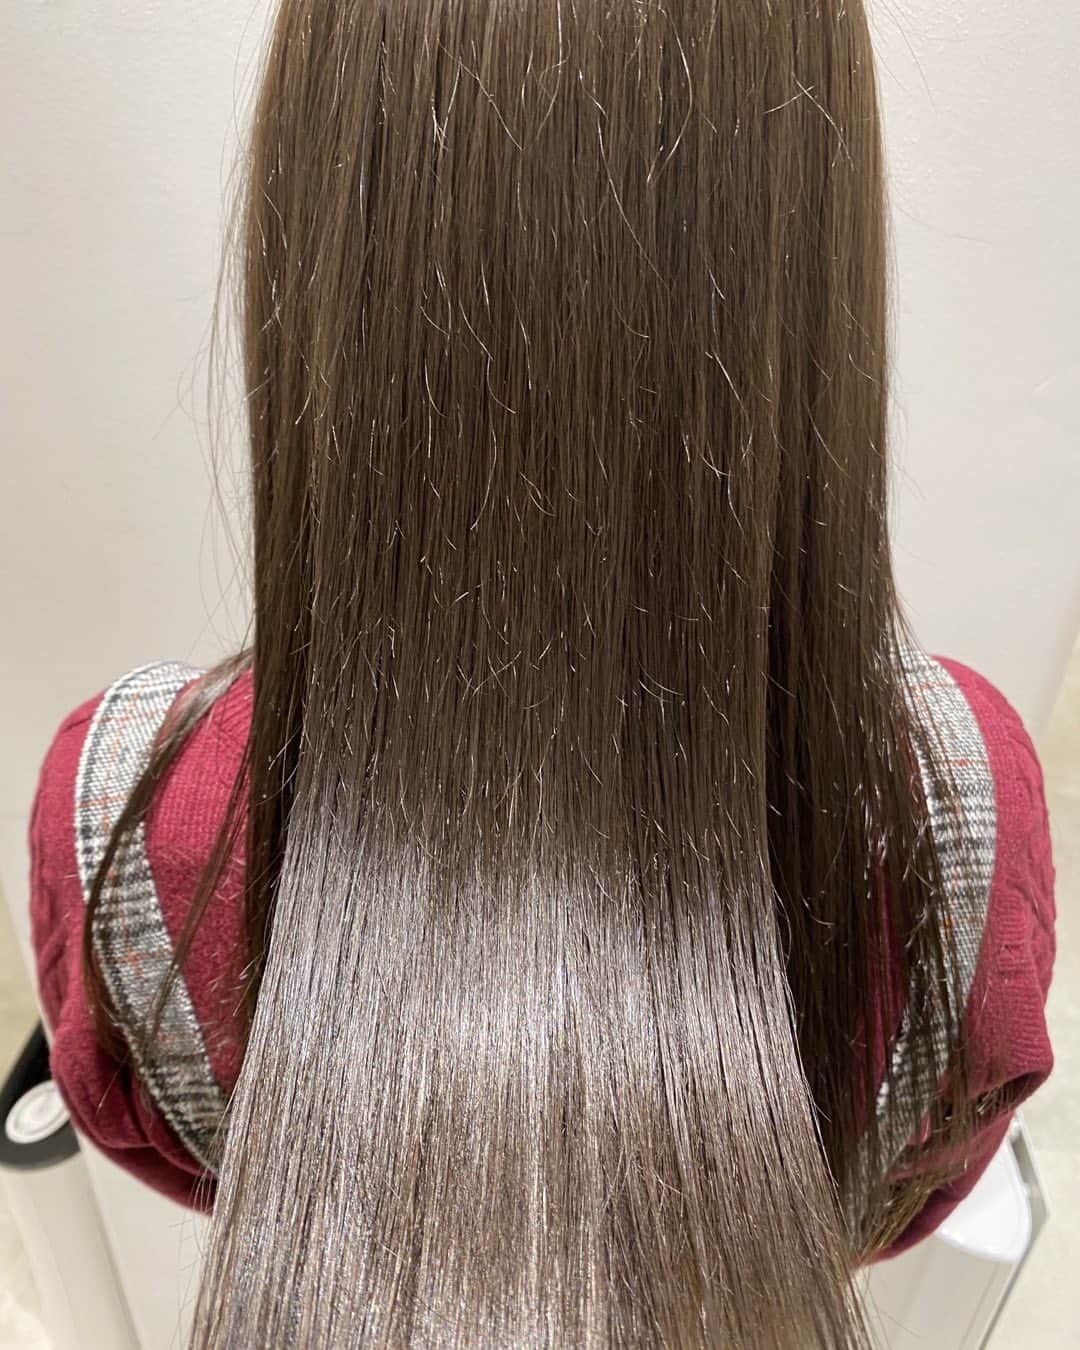 羽田野力哉のインスタグラム：「びっくりするほど圧倒的サラサラ感🌟  「毎日の髪質の悩みとはおさらば」悩みのない明日へ  髪質改善美容師の羽田野力哉（ハタボー）です。  現在、東京原宿のGO TODAY SHAIRSALON原宿ステラ店で髪質に悩める女性を助ける美容師として、活動しております。  僕は髪質改善カラーと髪質改善トリートメント、できるだけダメージをおさえたブリーチと縮毛矯正を得意としており、お客様本来の髪の美しさを引き出す事に全力を尽くしております  もしあなたの髪に艶が無い、痛みやクセ、広がりやパサつき白髪で悩んでいましたら専門美容師にぜひ一度お任せください。  では、あなたの魅力を最大限に引き出し、あなただけの本来の髪質を創る専門家のこだわりをご紹介します。  1️⃣丁寧なカウンセリング  初めての方でも安心して施術を受け、本来の姿になって頂けるように時間をかけてカウンセリング致します。  あなただけの髪質を作るにはカウンセリングが非常に重要となります。  ・髪がパサつく  ・髪引っかかる  ・女性らしい艶髪にしたい  ・まとまりが悪い  ・癖で広がり、ツヤがない  ・乾かすだけで素敵になりたい  などなど、髪のお悩みや施術に関して不安な事や過去に納得がいかなかった点など、なんでもご相談ください。  これまでに専門家として多くの悩みを解決してきた実績があるので、あなたを艶髪に導くための豊富なご提案ができます。  2️⃣完全オーダメイドの髪質改善カラー  あなた本来の髪質を作るには一人一人の髪質やダメージなどに合わせて、専門美容師があなたの髪に最適な髪質改善のコースを組み立てる必要があります。  「毎日の悩みを本当にどうにかしたい」そんな方はぜひ一度プロにお任せください🌟  これまでに髪に悩む多くの女性を、毎日のお悩みから救って来ました  安心してお任せください。お風呂上がりに乾かしたあともまるでサロンのクォリティに。  専門家にお任せいただければ、毎日をシルクのような仕上がりに。  3️⃣技術保証  万が一仕上がりが気に入らなかった場合は無料でお直しさせていただきます。  必ず納得の仕上がりになるまで担当させtいただきますのでご安心ください。  4️⃣予約制の完全個室の空間  完全プライベート空感になります 施術を受けて頂くだけでなく、ここで過ごす時間が特別なものであって欲しいと考えており  リラックスした時間を過ごしていただく為に、ご予約は人数制限を設けております。  髪質改善美容師が一人一人に集中し、丁寧にマンツーマンでご対応いたします。  心から安心して施術を受けていただけると幸いです。」